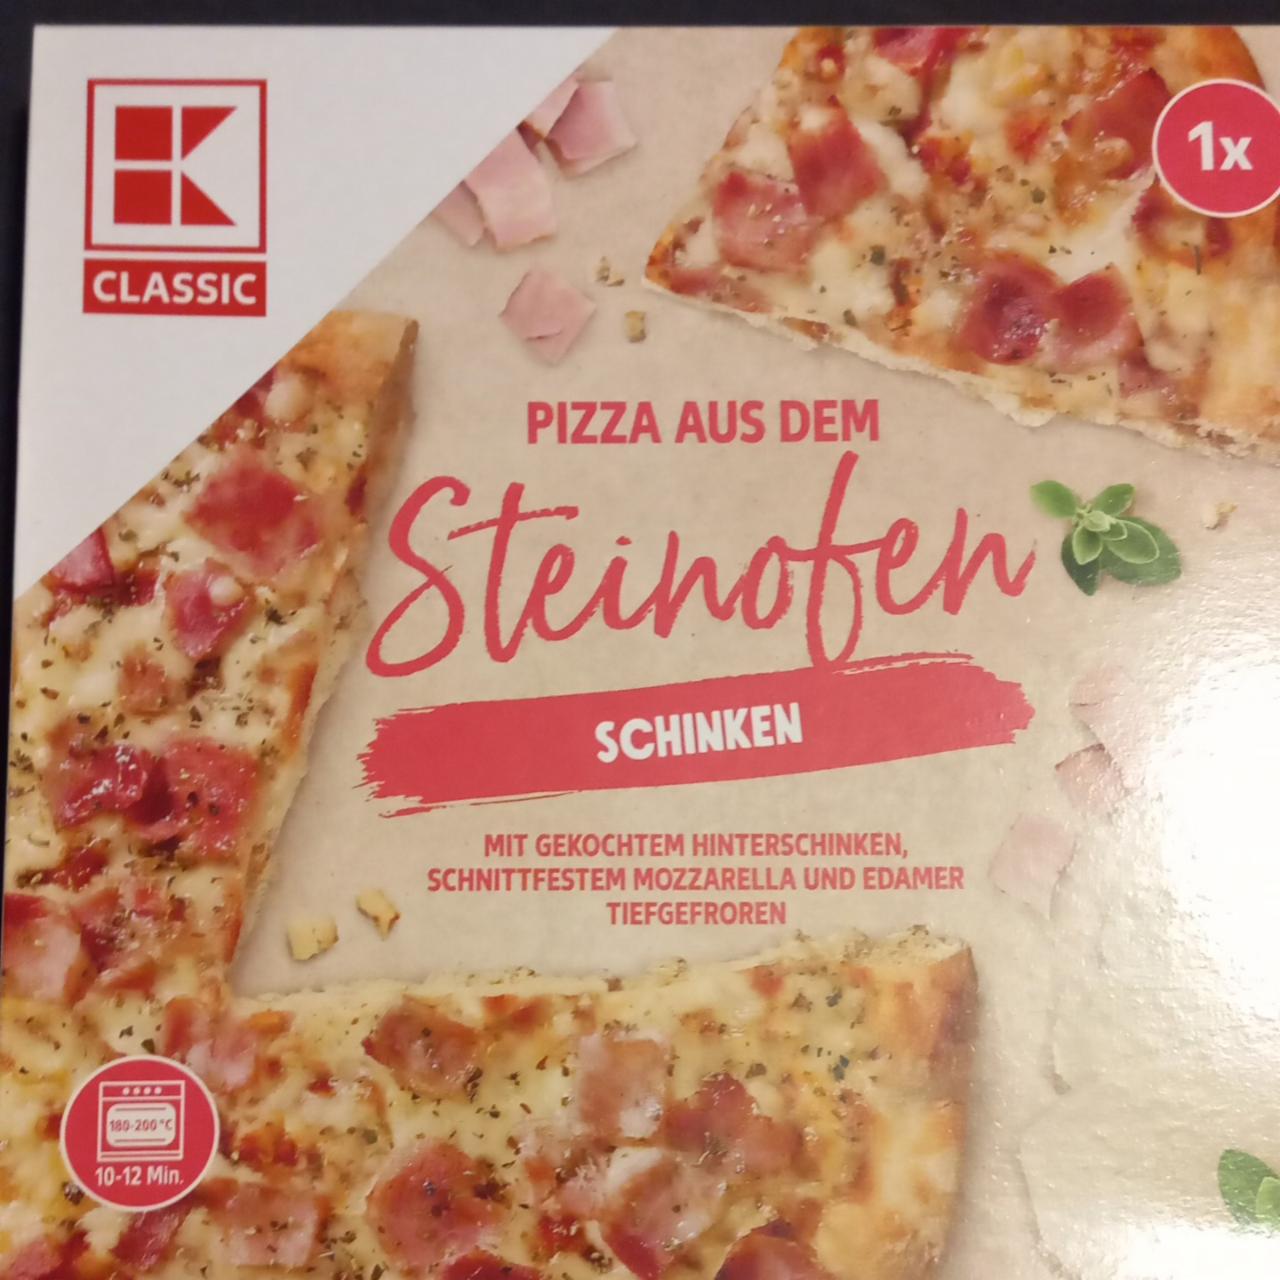 Fotografie - Pizza aus dem Steinofen Schinken K-Classic